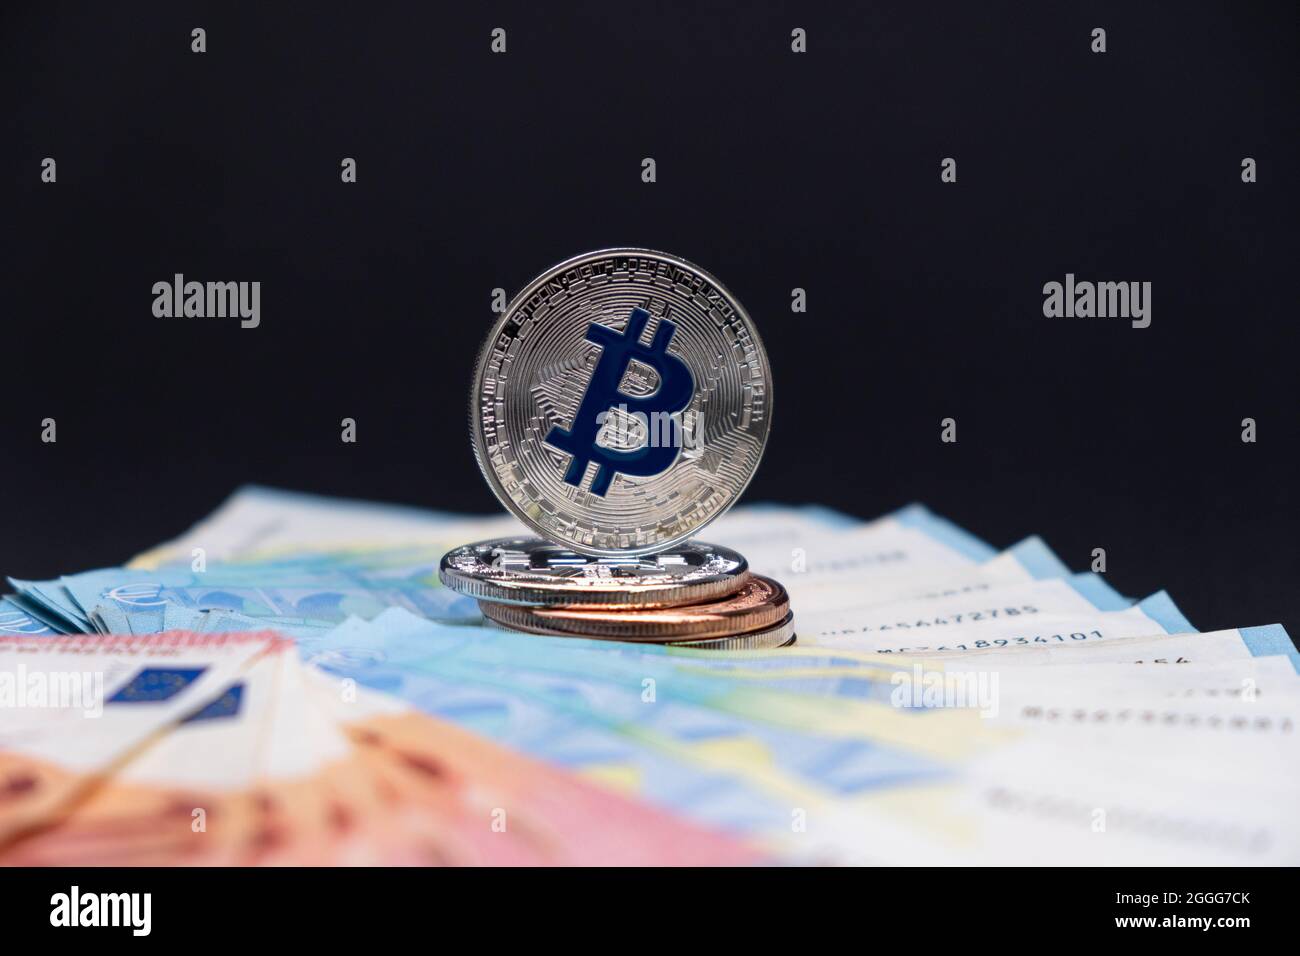 Los bitcoins con el símbolo azul en foco se encuentran encima de los billetes de banco de 20 y 10 euros. Bitcoins en billetes de diez y veinte euros sobre fondo oscuro. Foto de stock